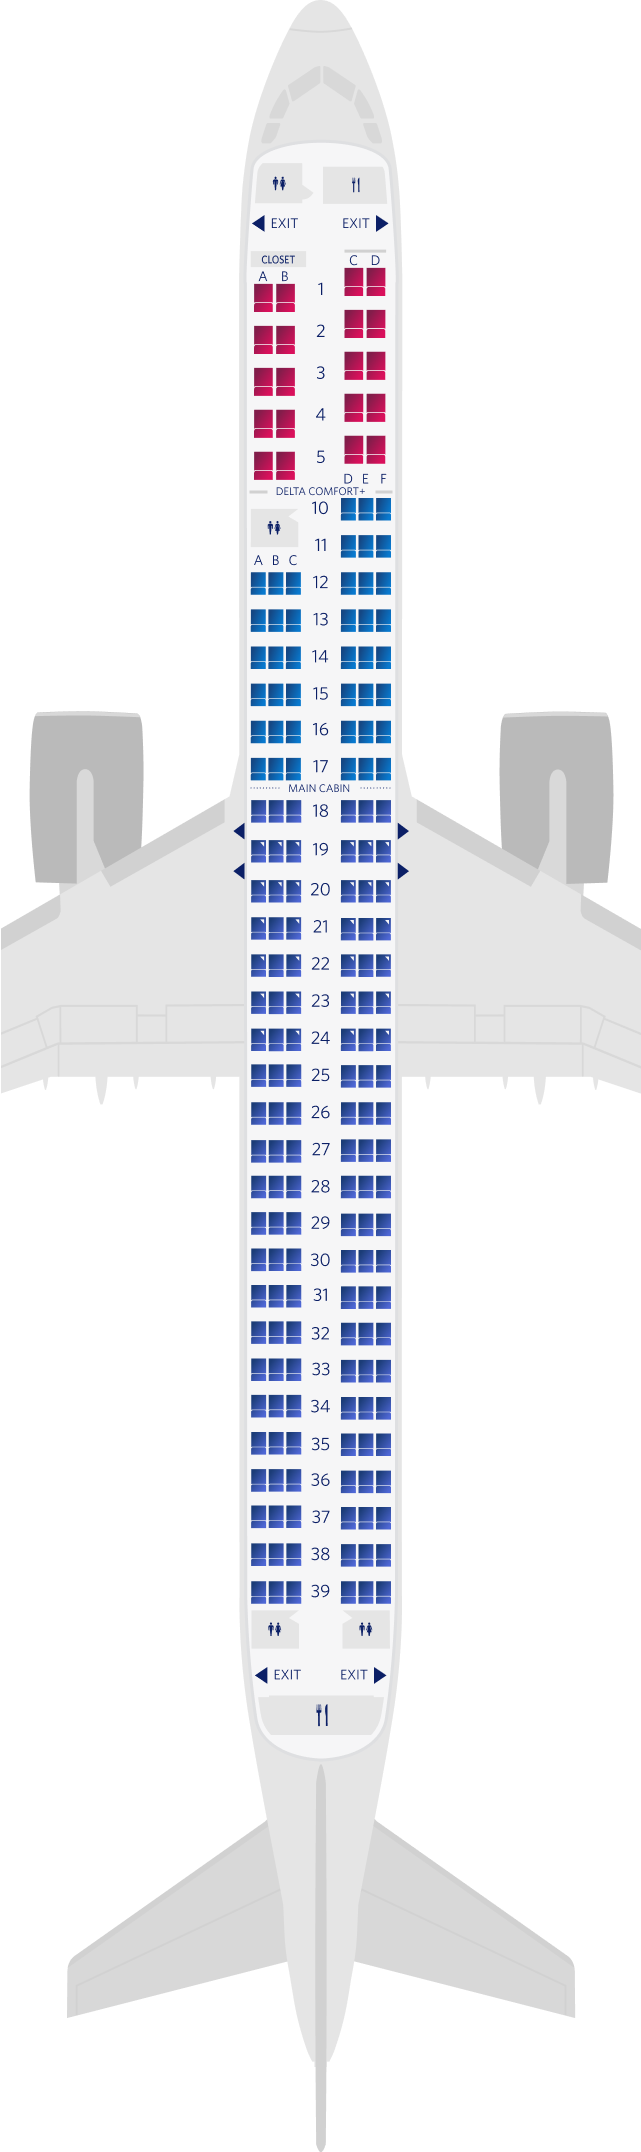 에어버스 A321neo 3-객실 좌석 배치도